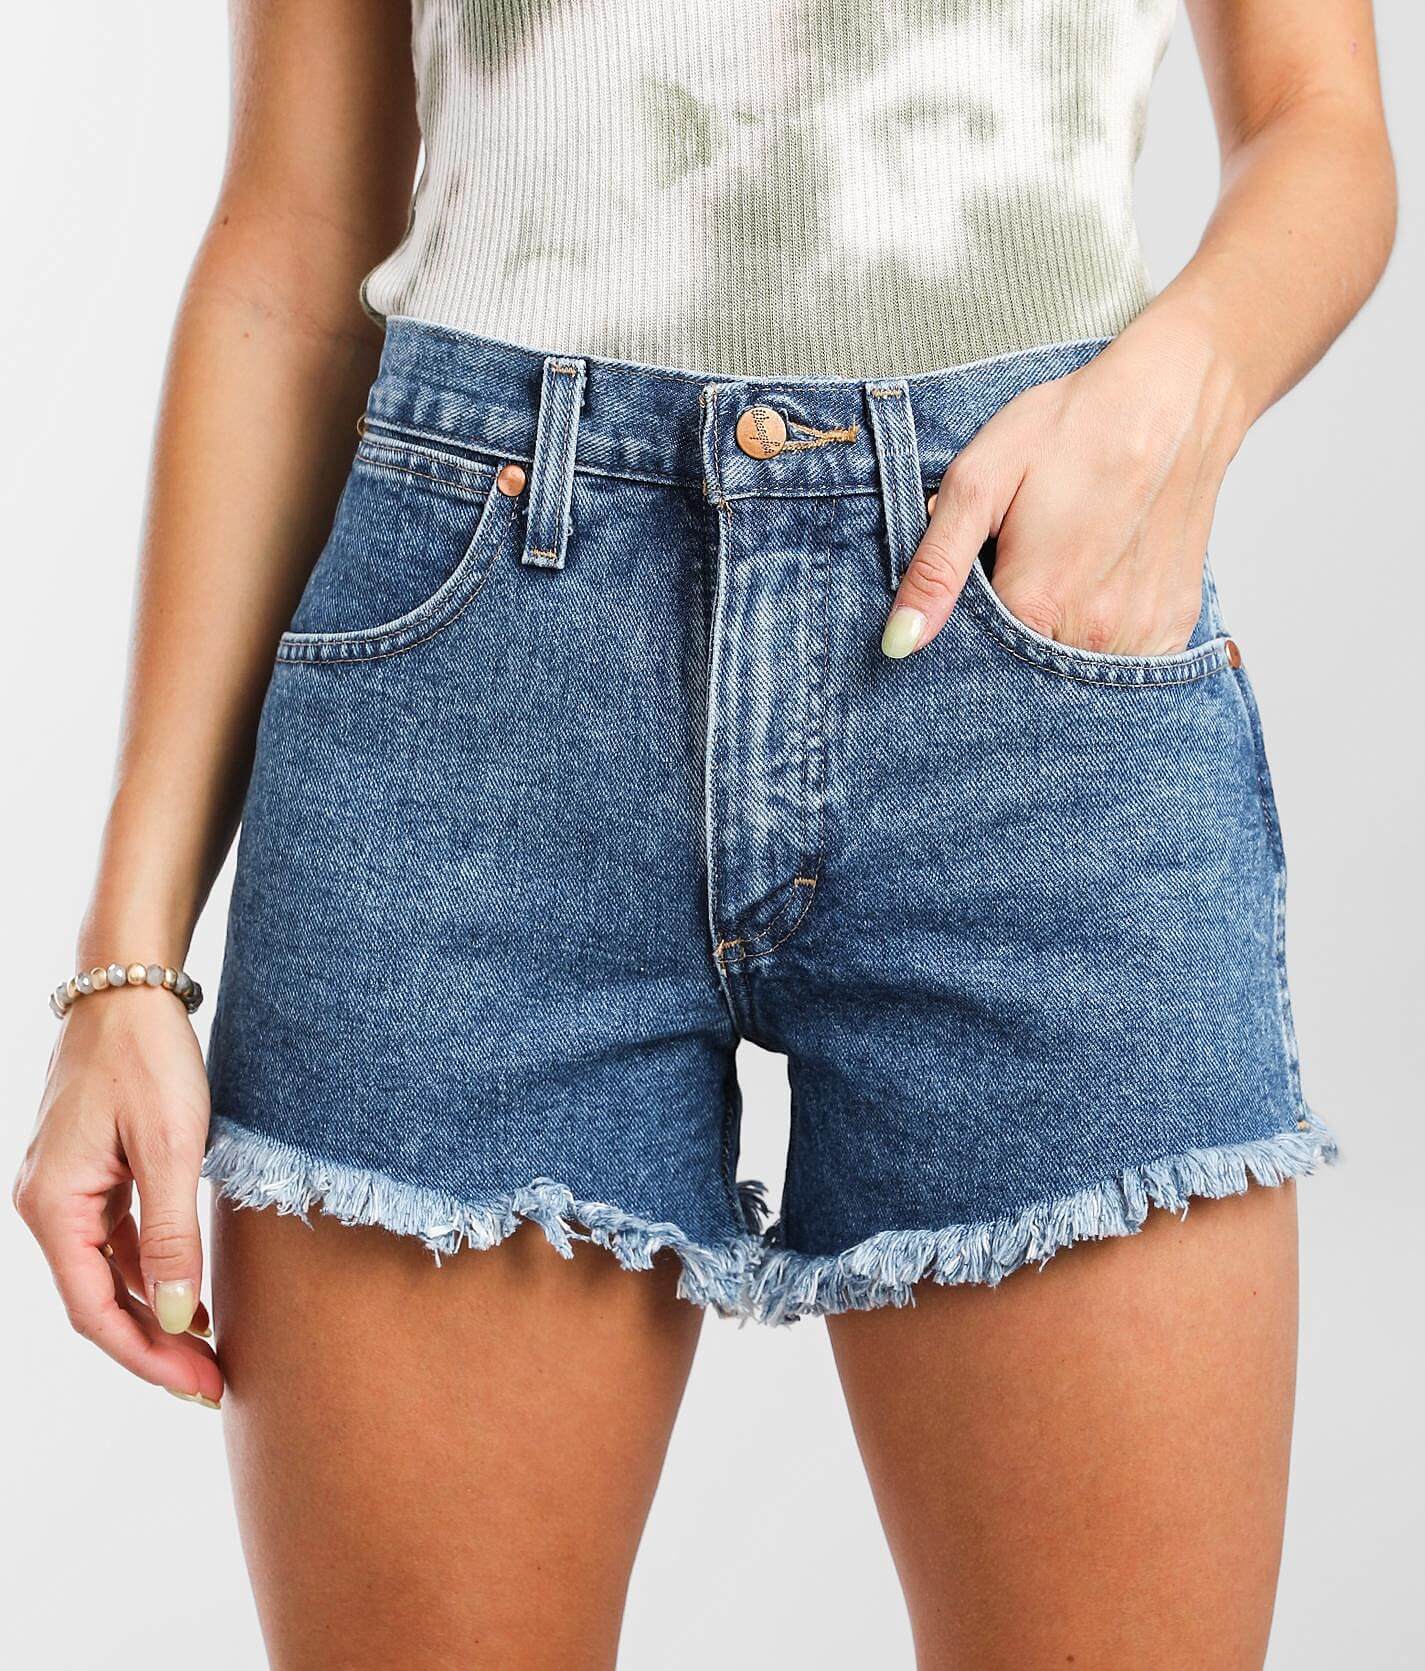 wrangler jean shorts womens